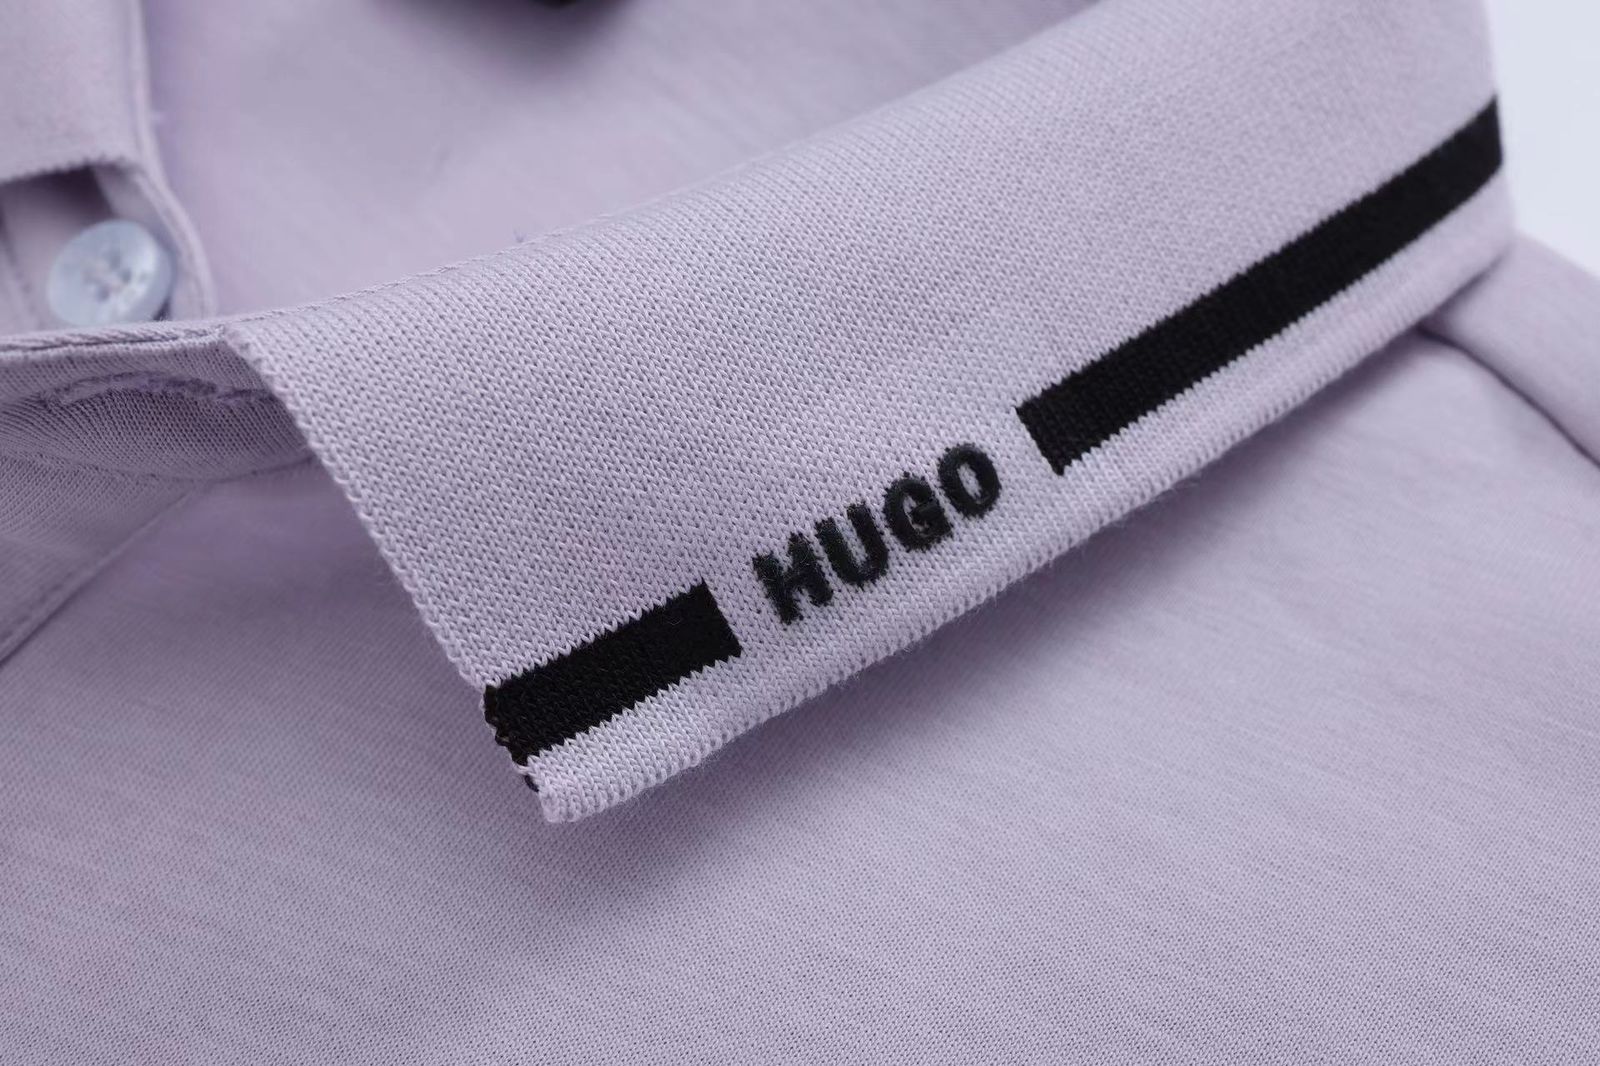 HUGO BOSS || Light Pastel Paul Polo T-Shirt For Men - FASHION MYST 